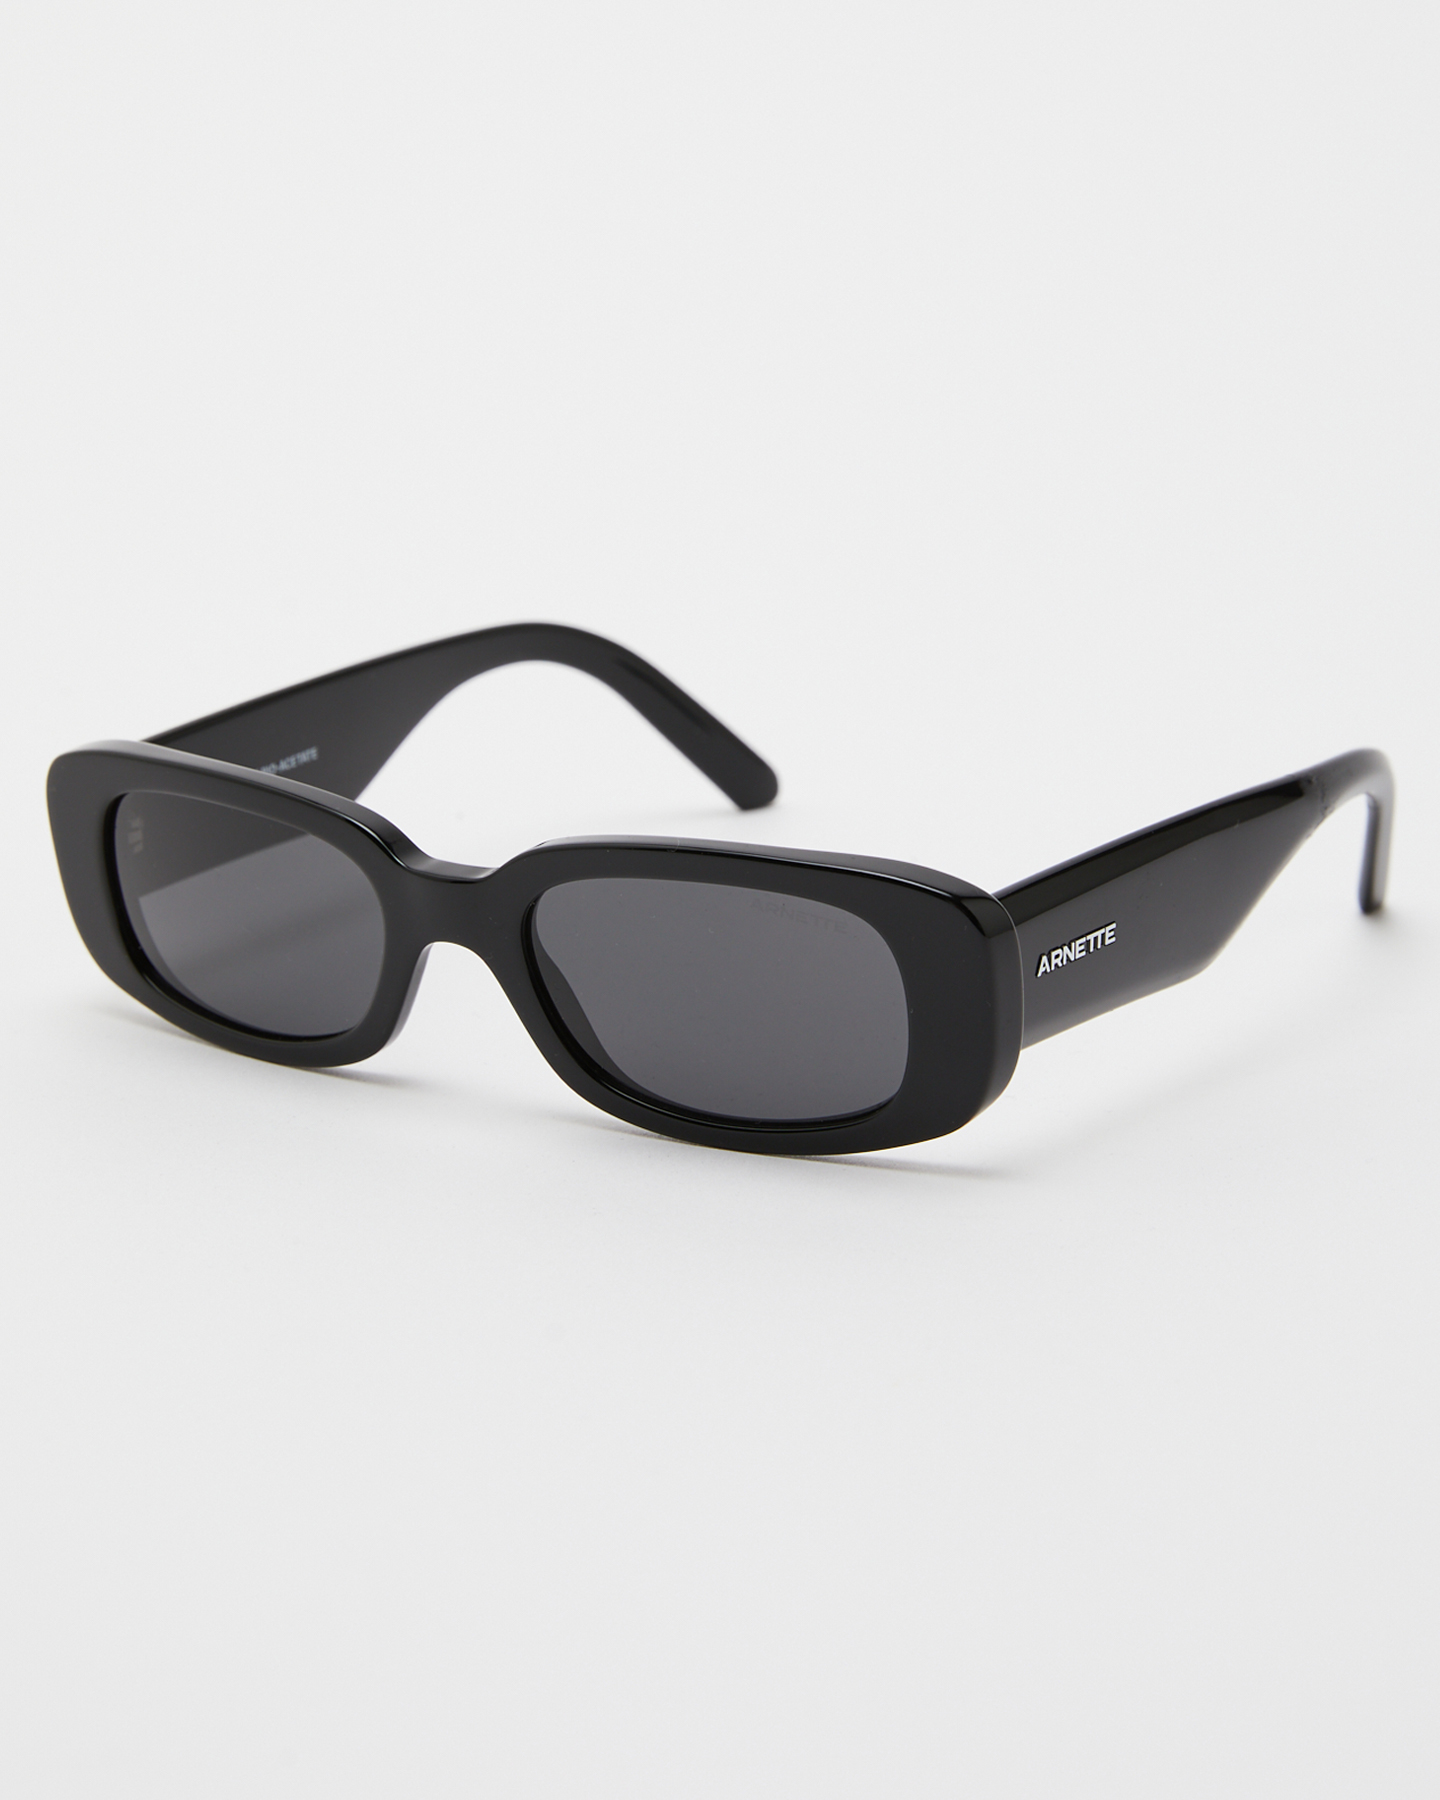 Arnette Litty Sunglasses - Black / Dark Grey | SurfStitch